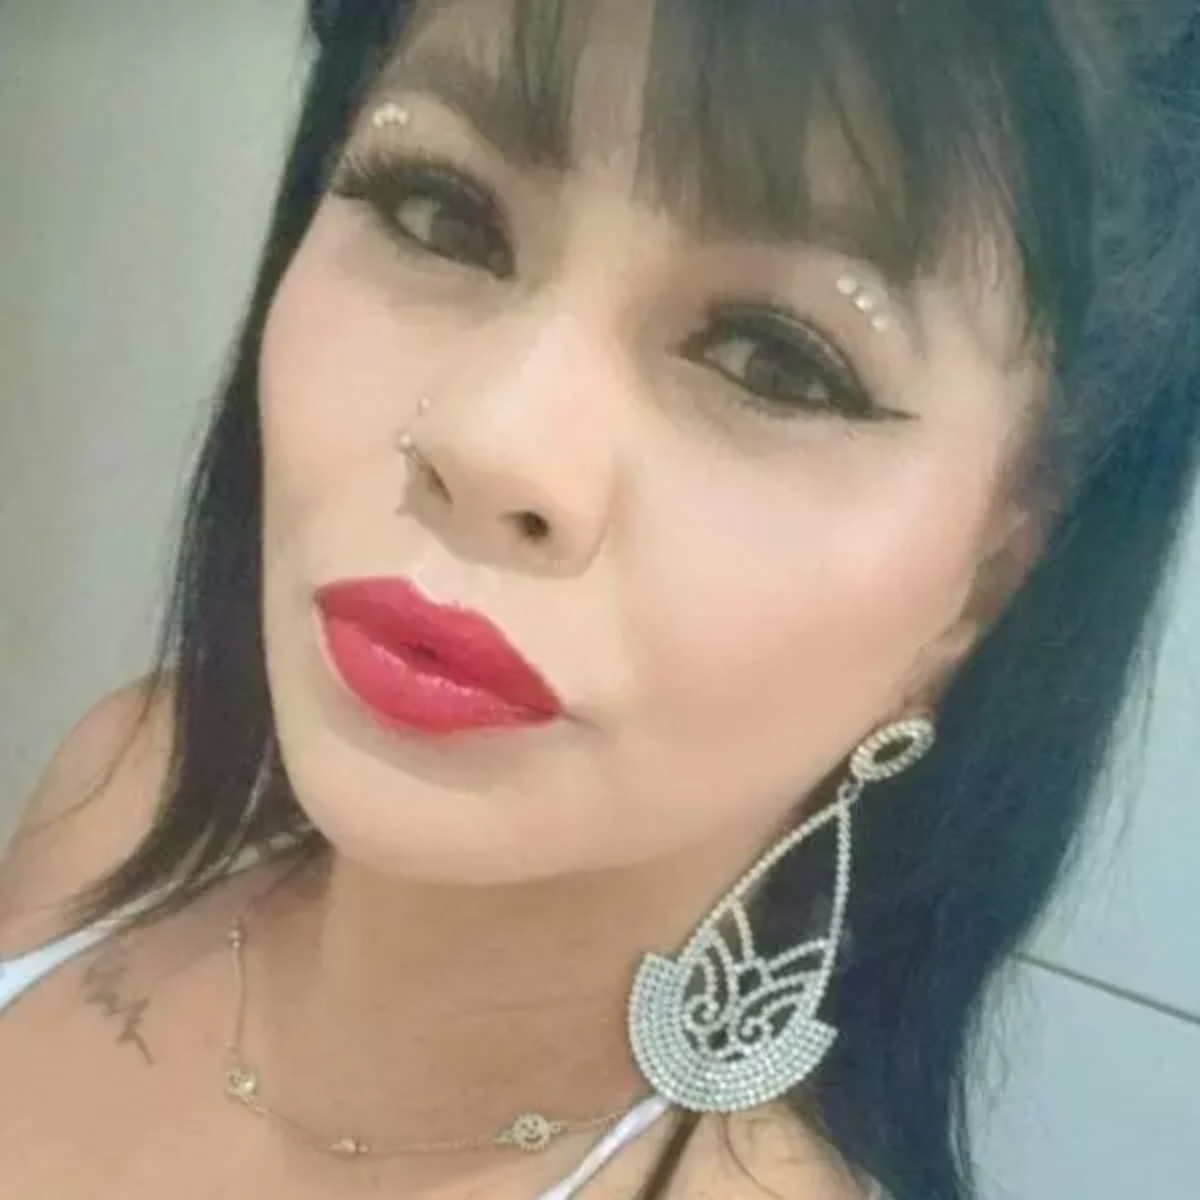  Caso Maria Bonete: Polícia conclui inquérito 